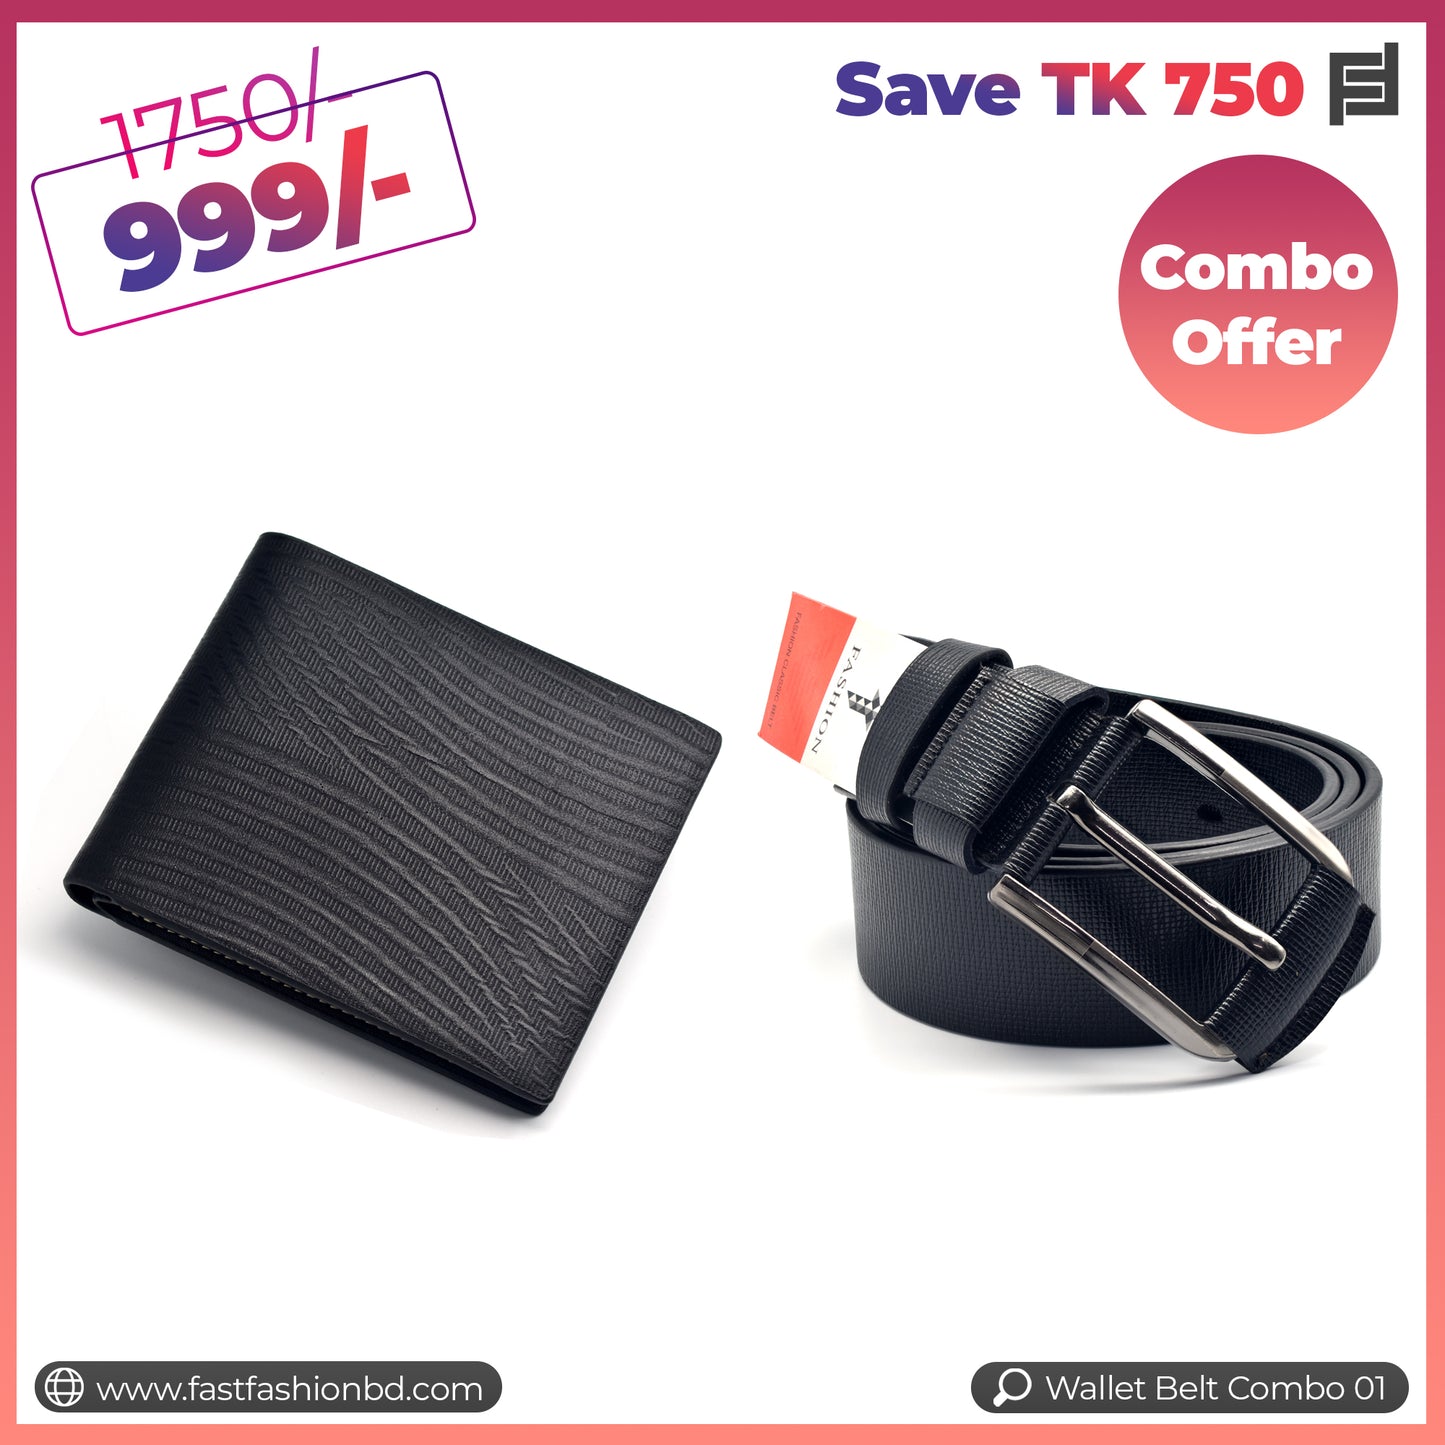 Wallet Belt Combo Offer Save TK 750 - Wallet Belt Combo 01